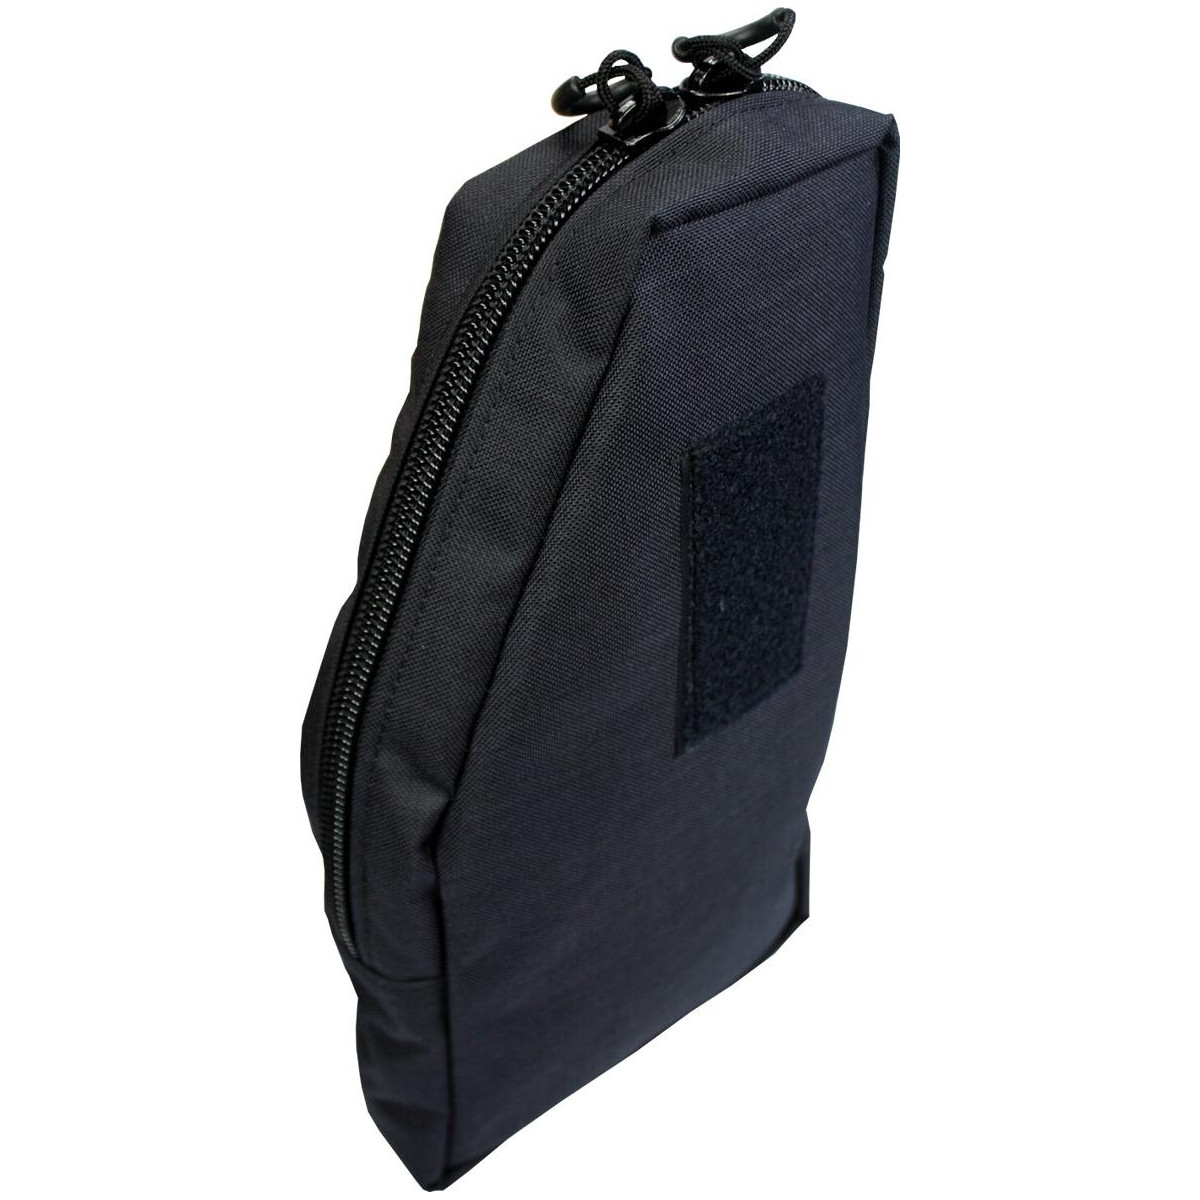 Side-bag Mission Backpack